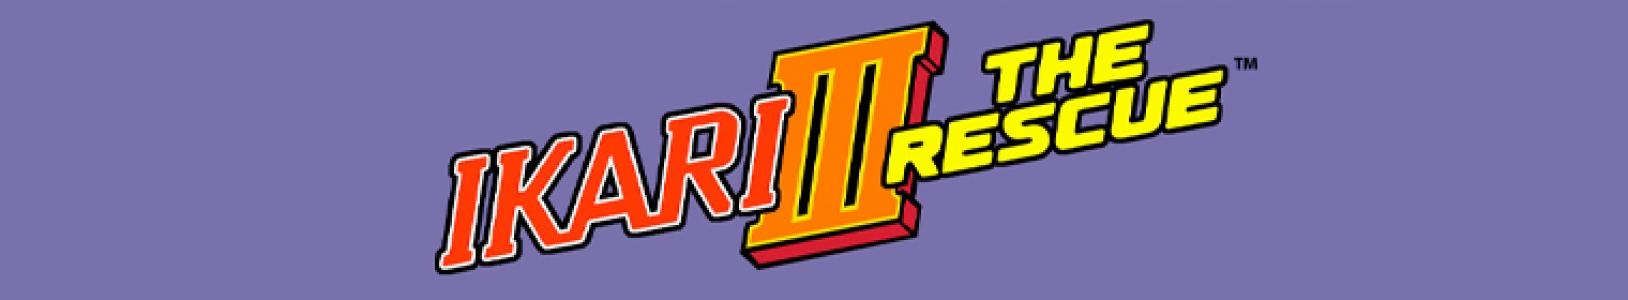 Ikari III: The Rescue banner